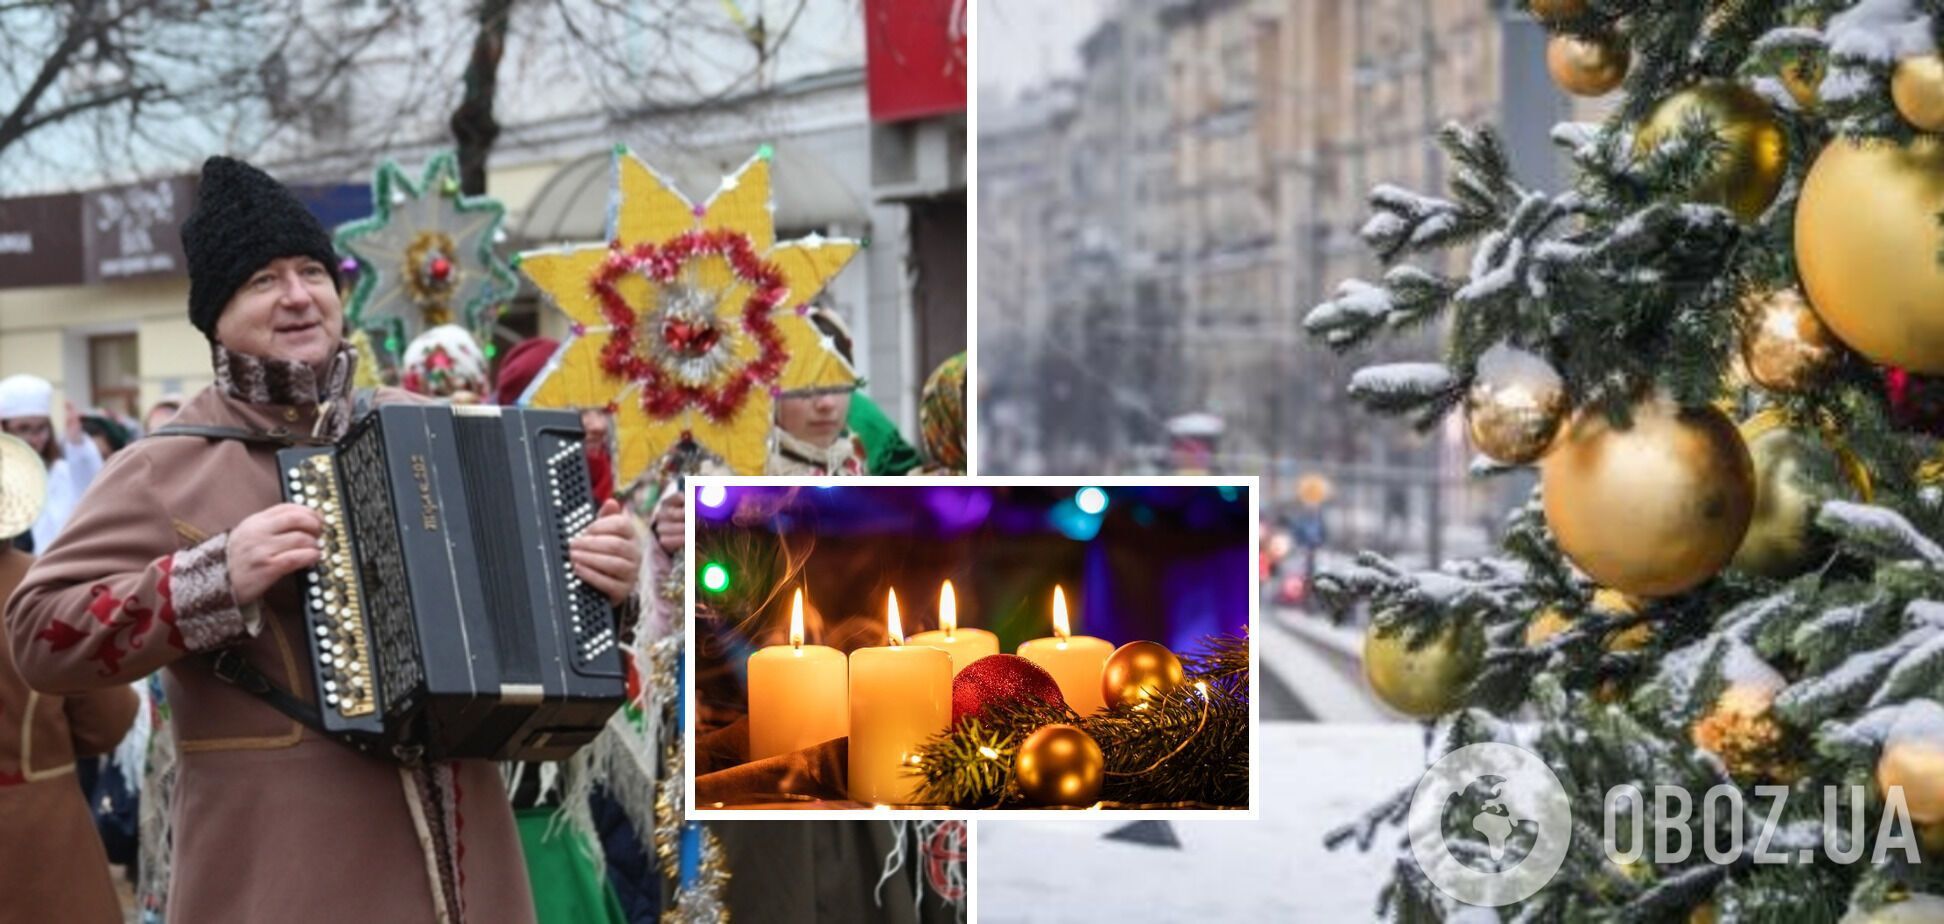 Погода на Сочельник и Рождество в Украине: синоптикиня озвучила прогноз